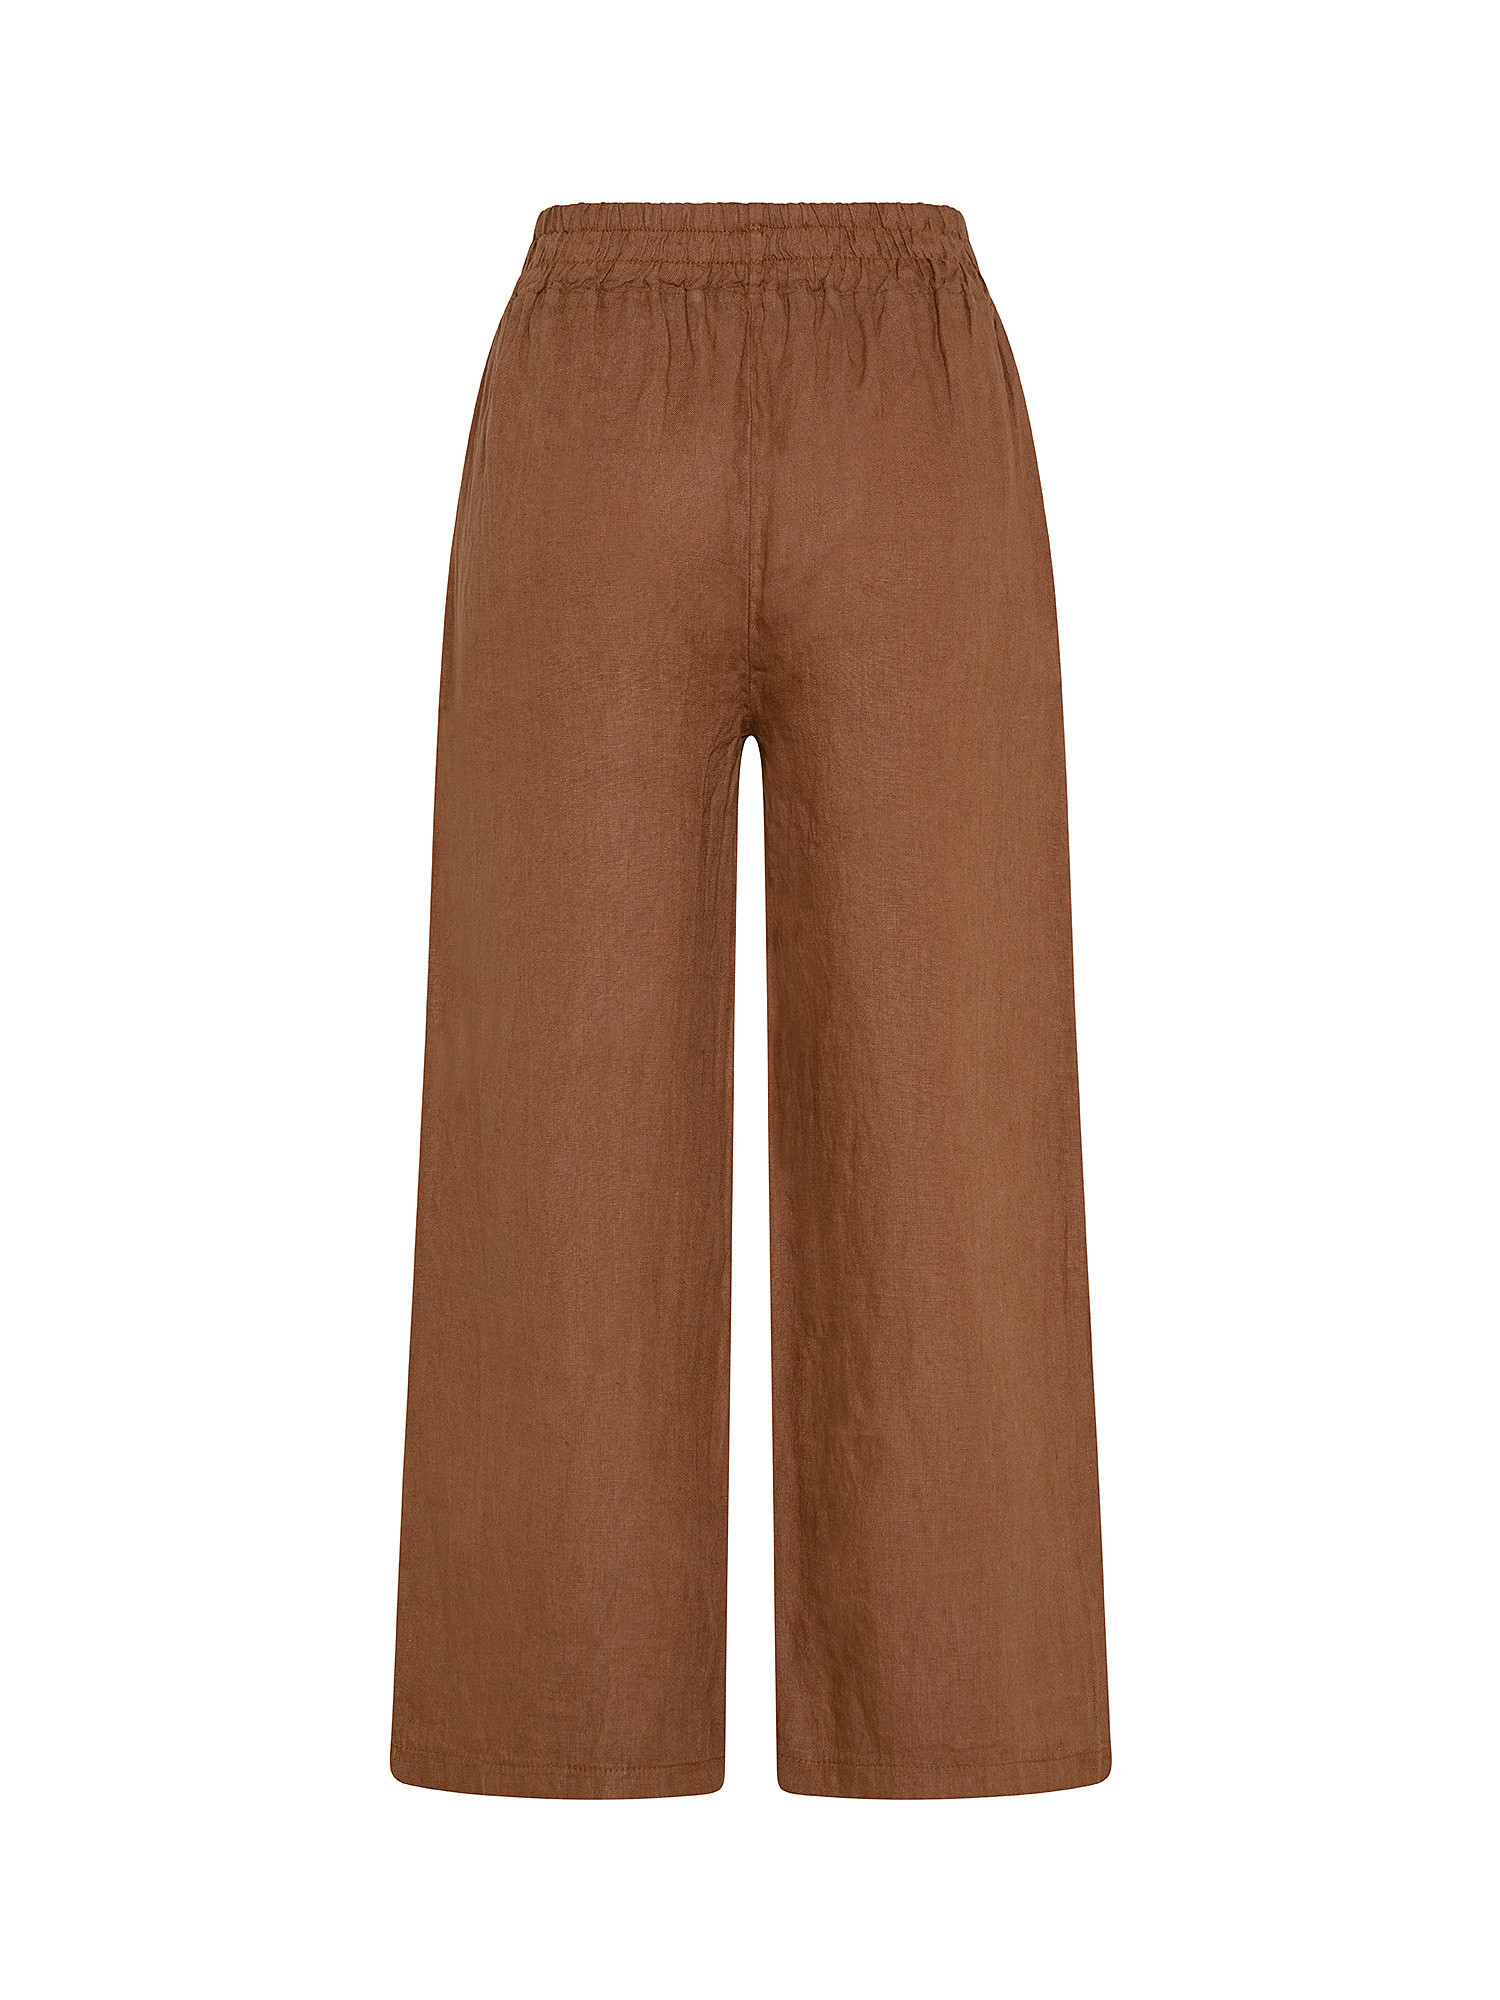 Pantalone puro lino con fusciacca, Marrone, large image number 1